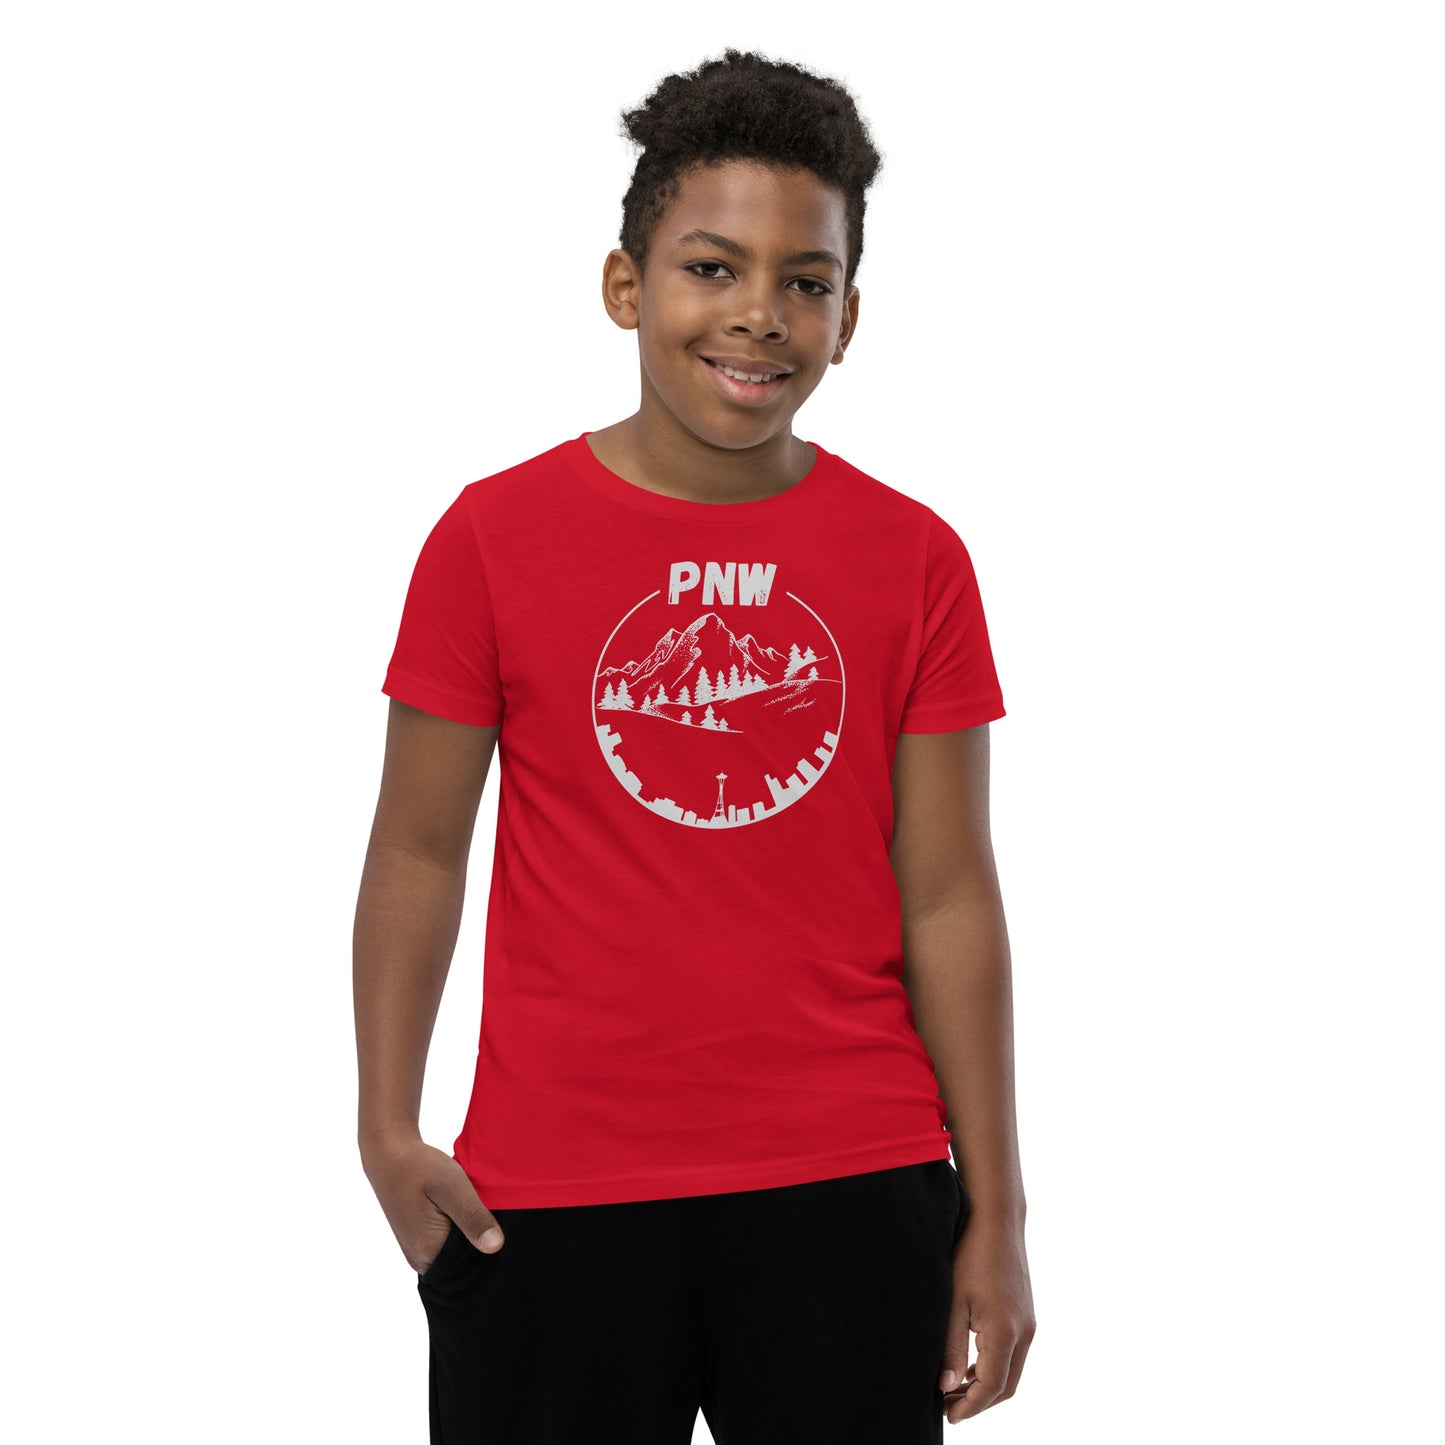 Youth PNW Short Sleeve T-Shirt